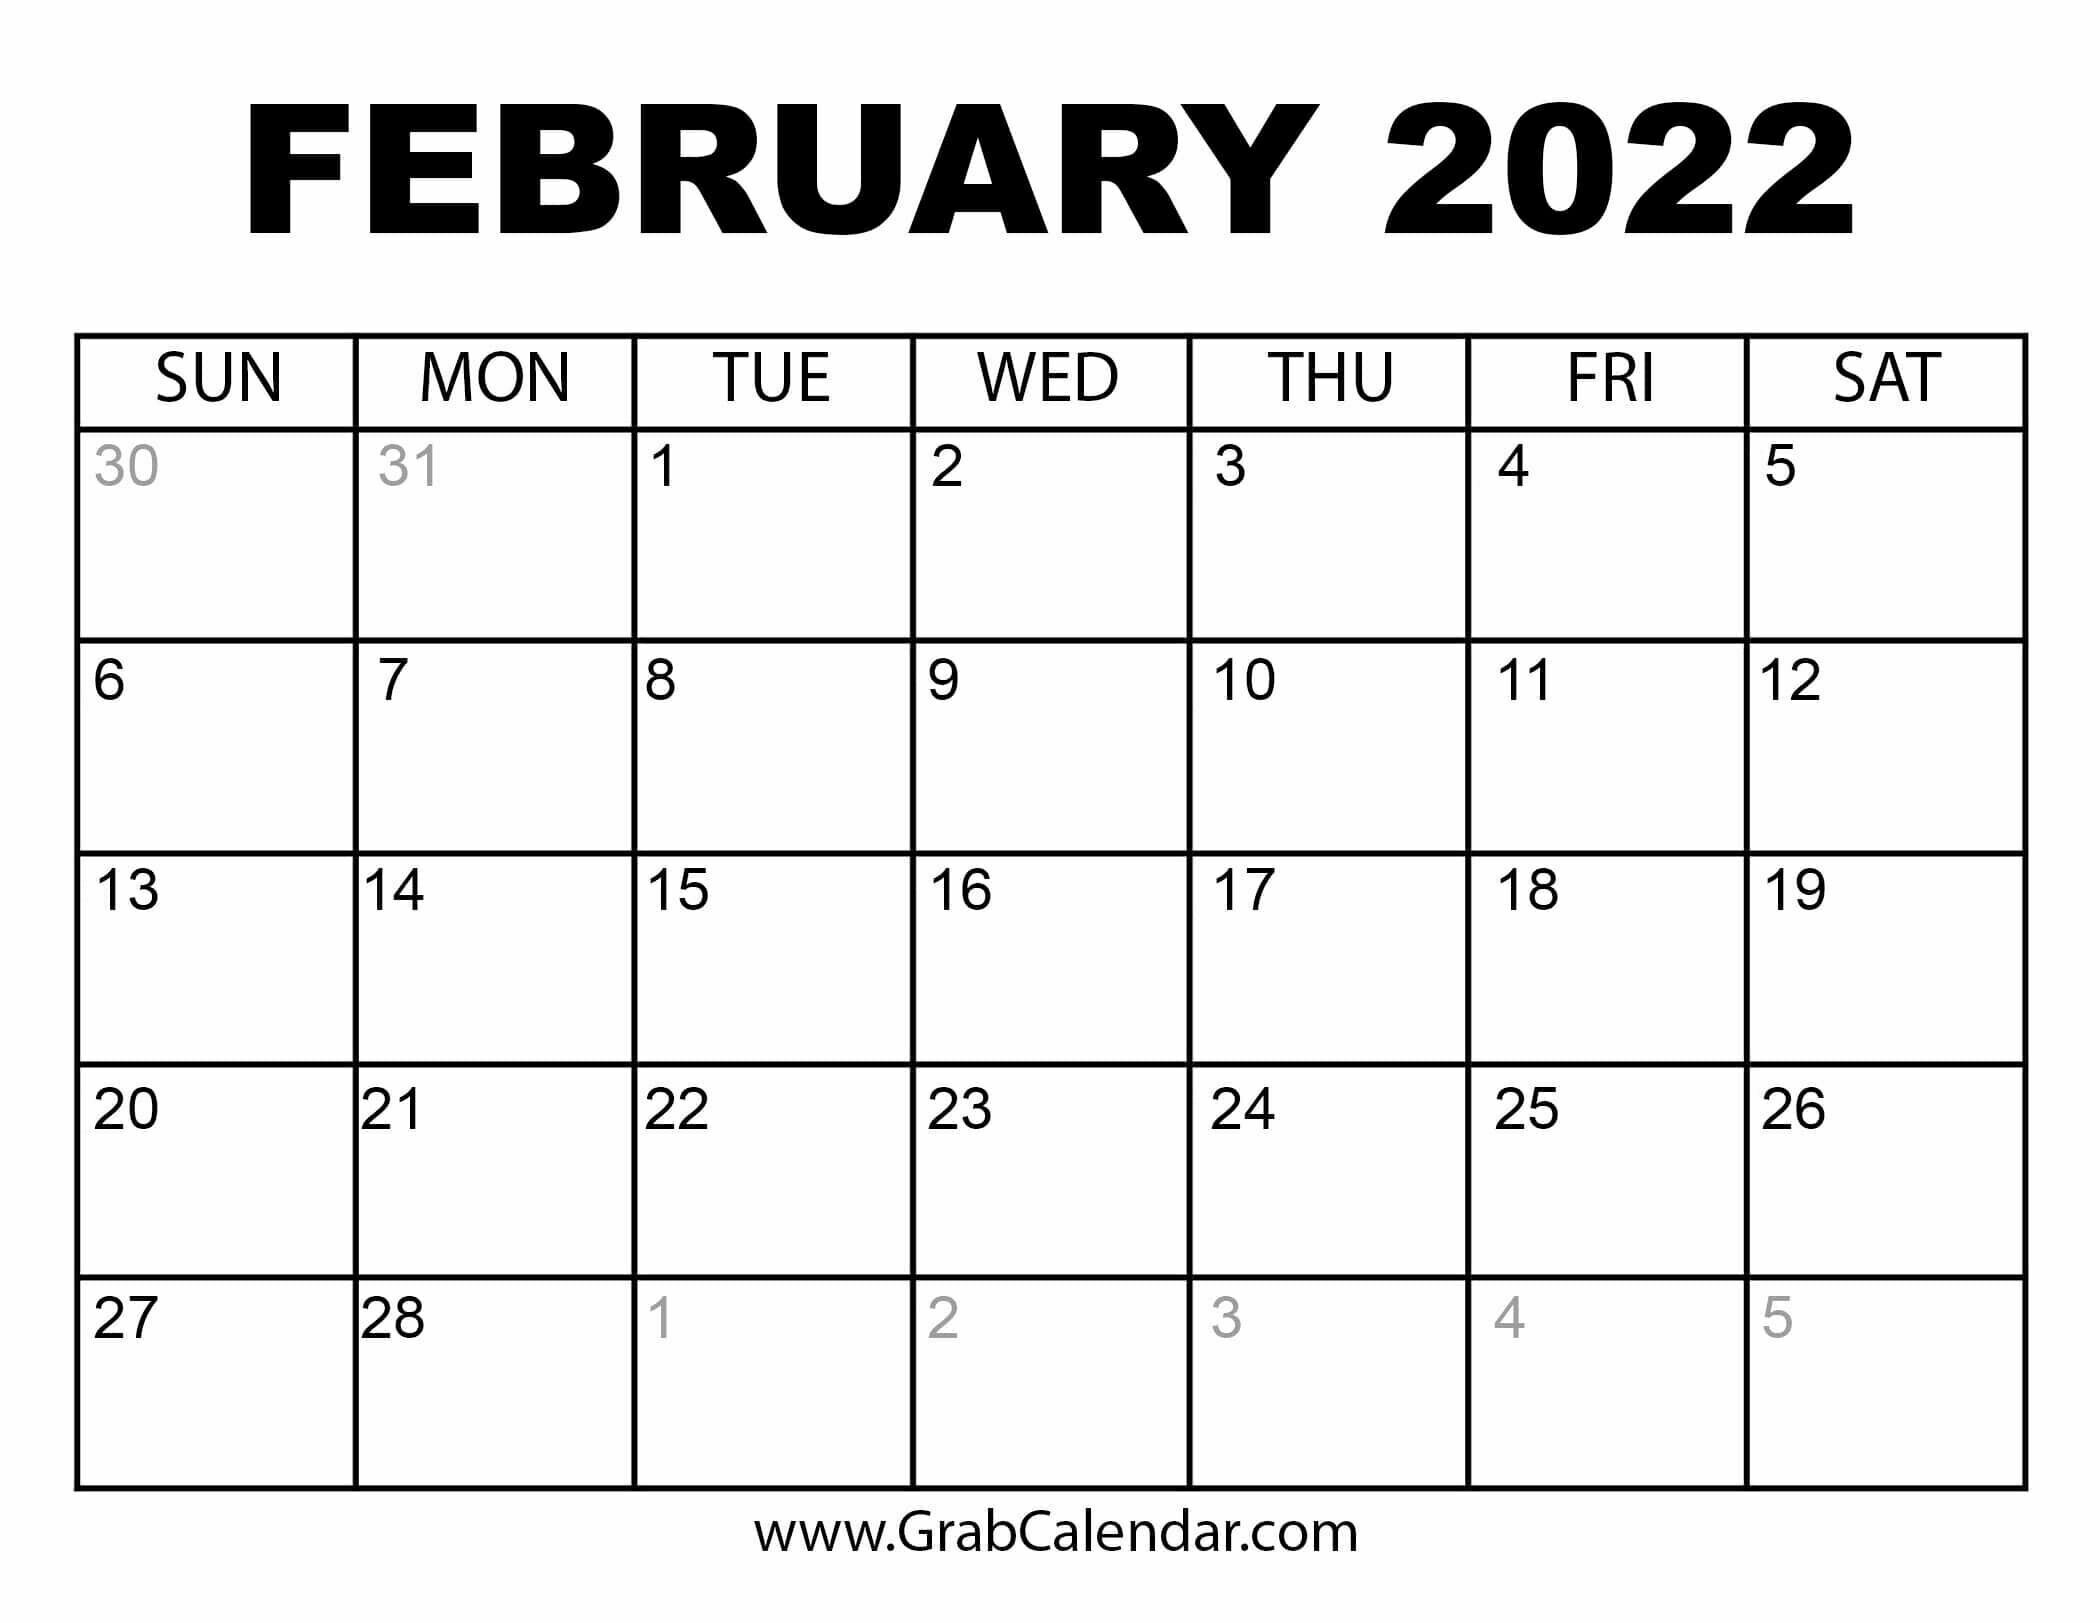 Avatar: February 2022 Calendar